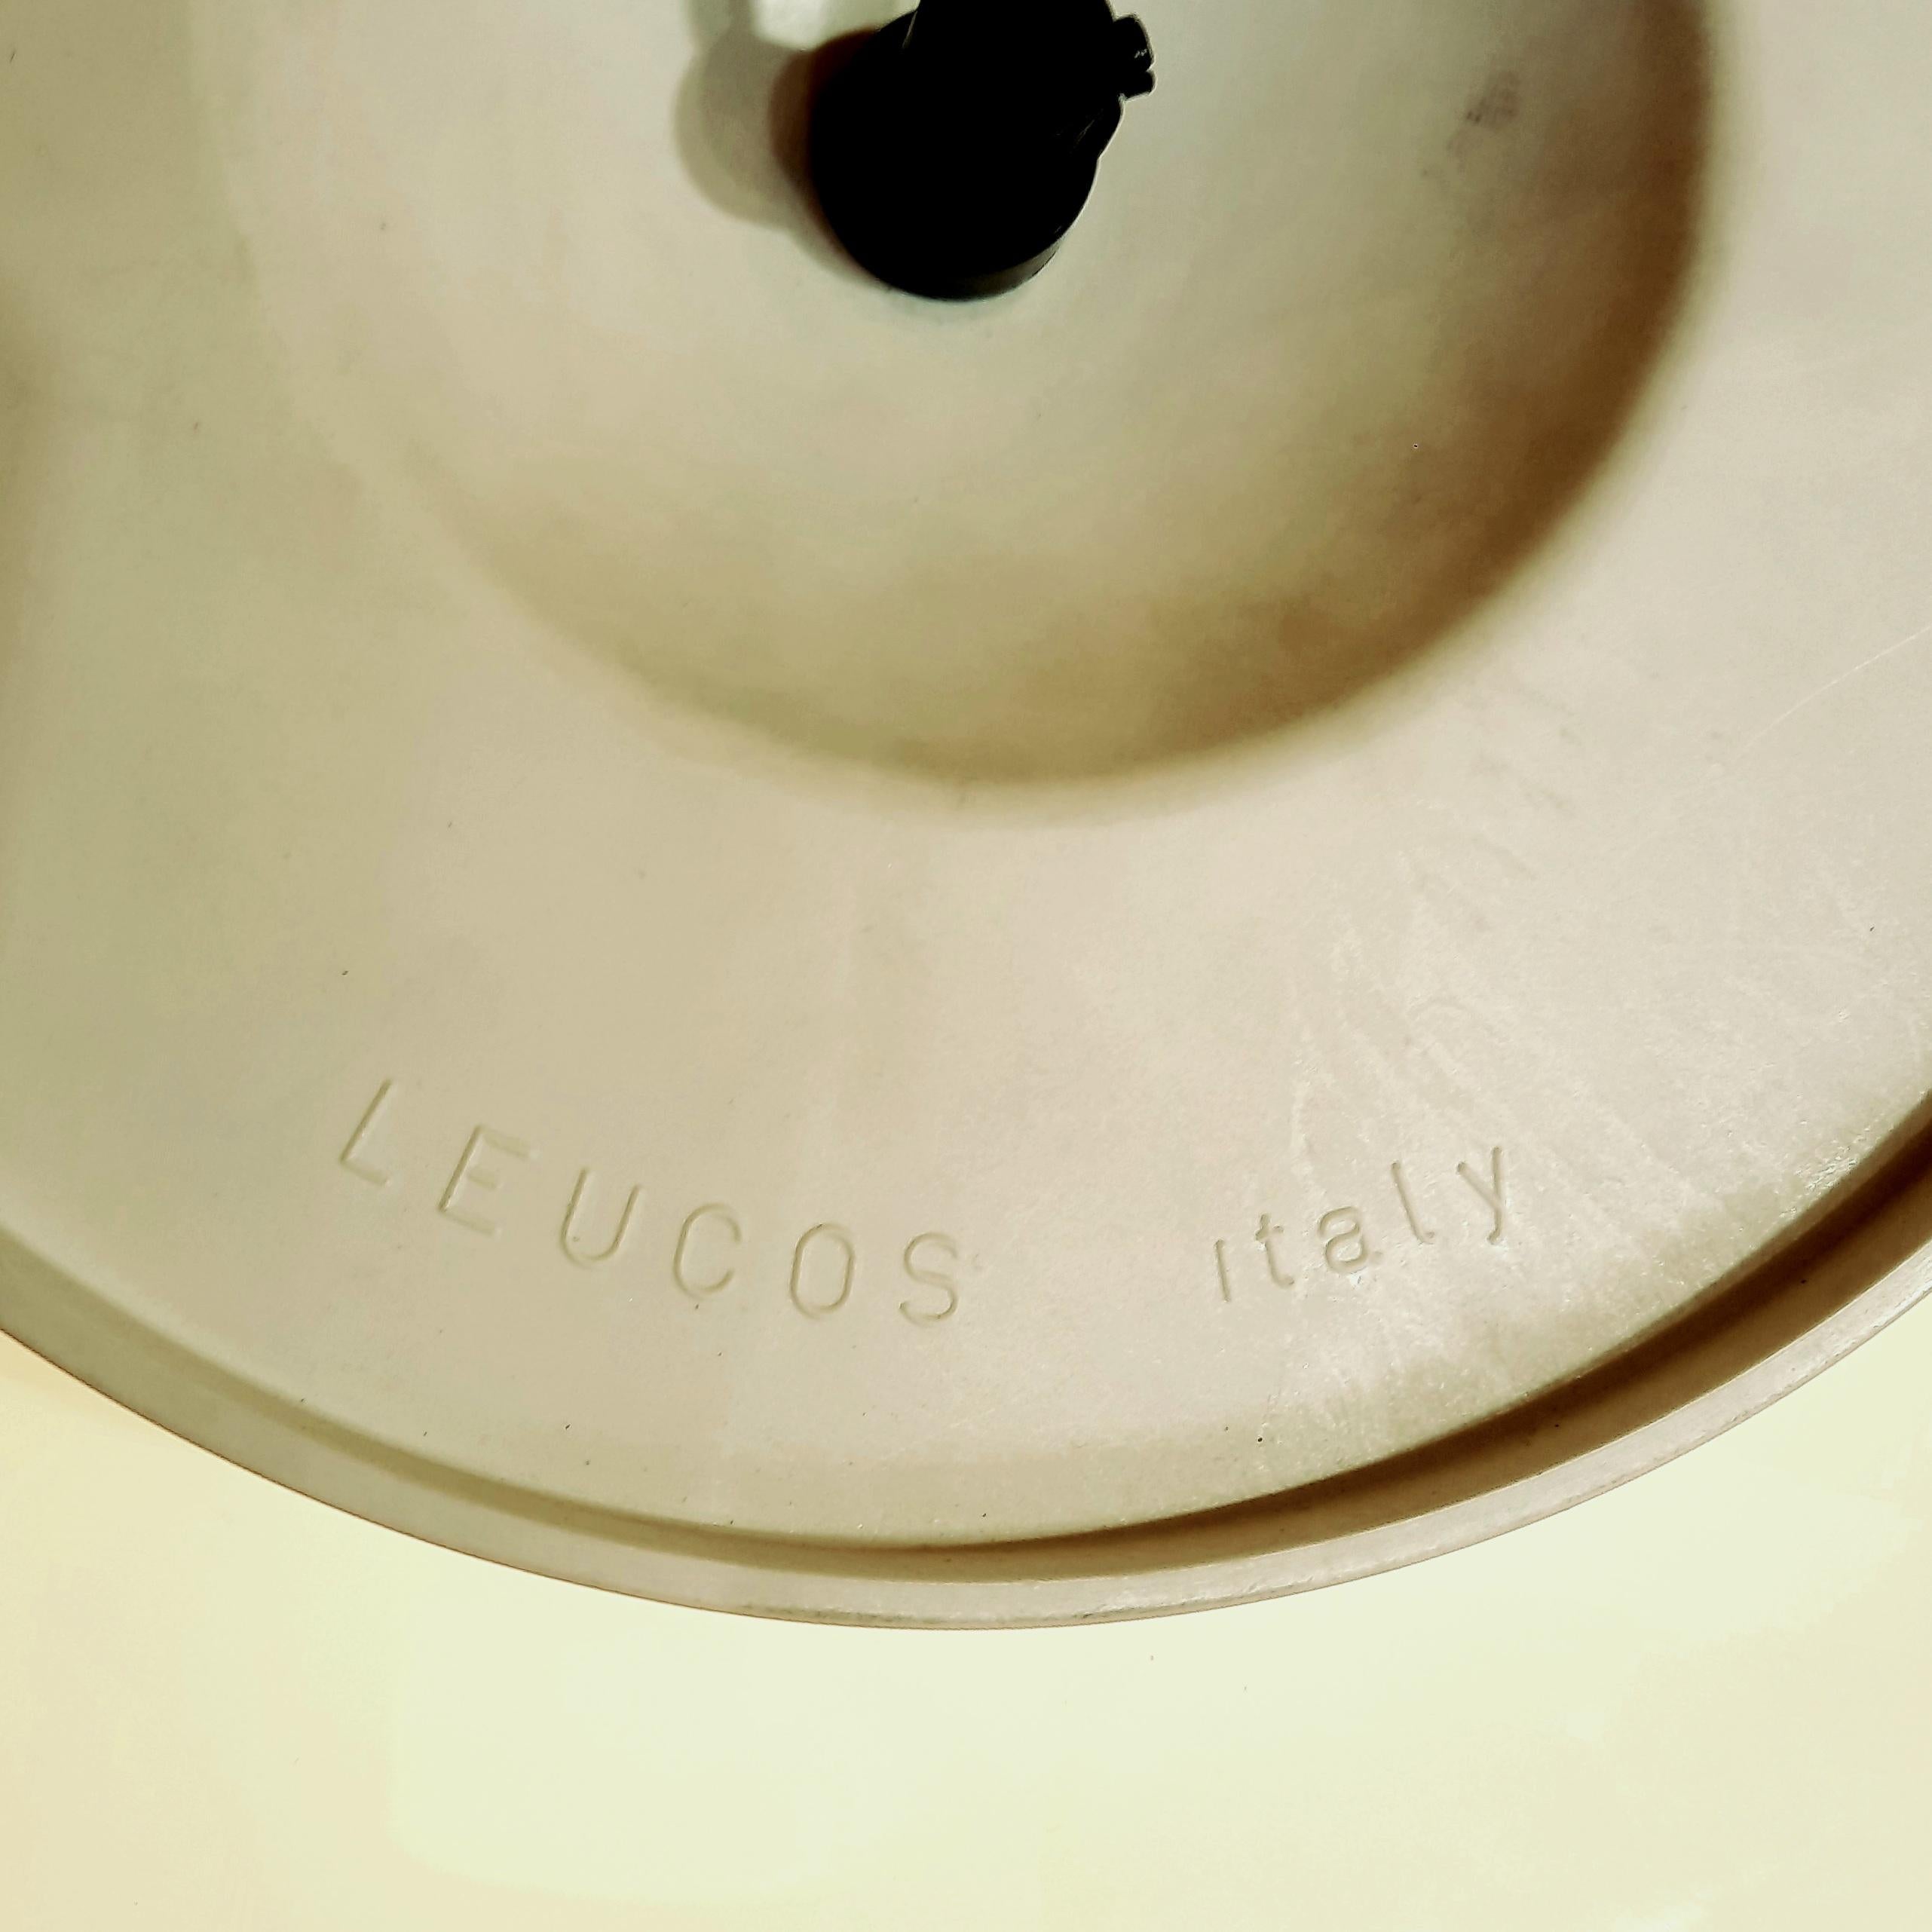 Renato Toso est un concepteur de lumière italien influent qui a apporté des contributions significatives au monde de la conception d'éclairage. Il a collaboré avec la célèbre société d'éclairage Leucos, entre autres cabinets de design de premier